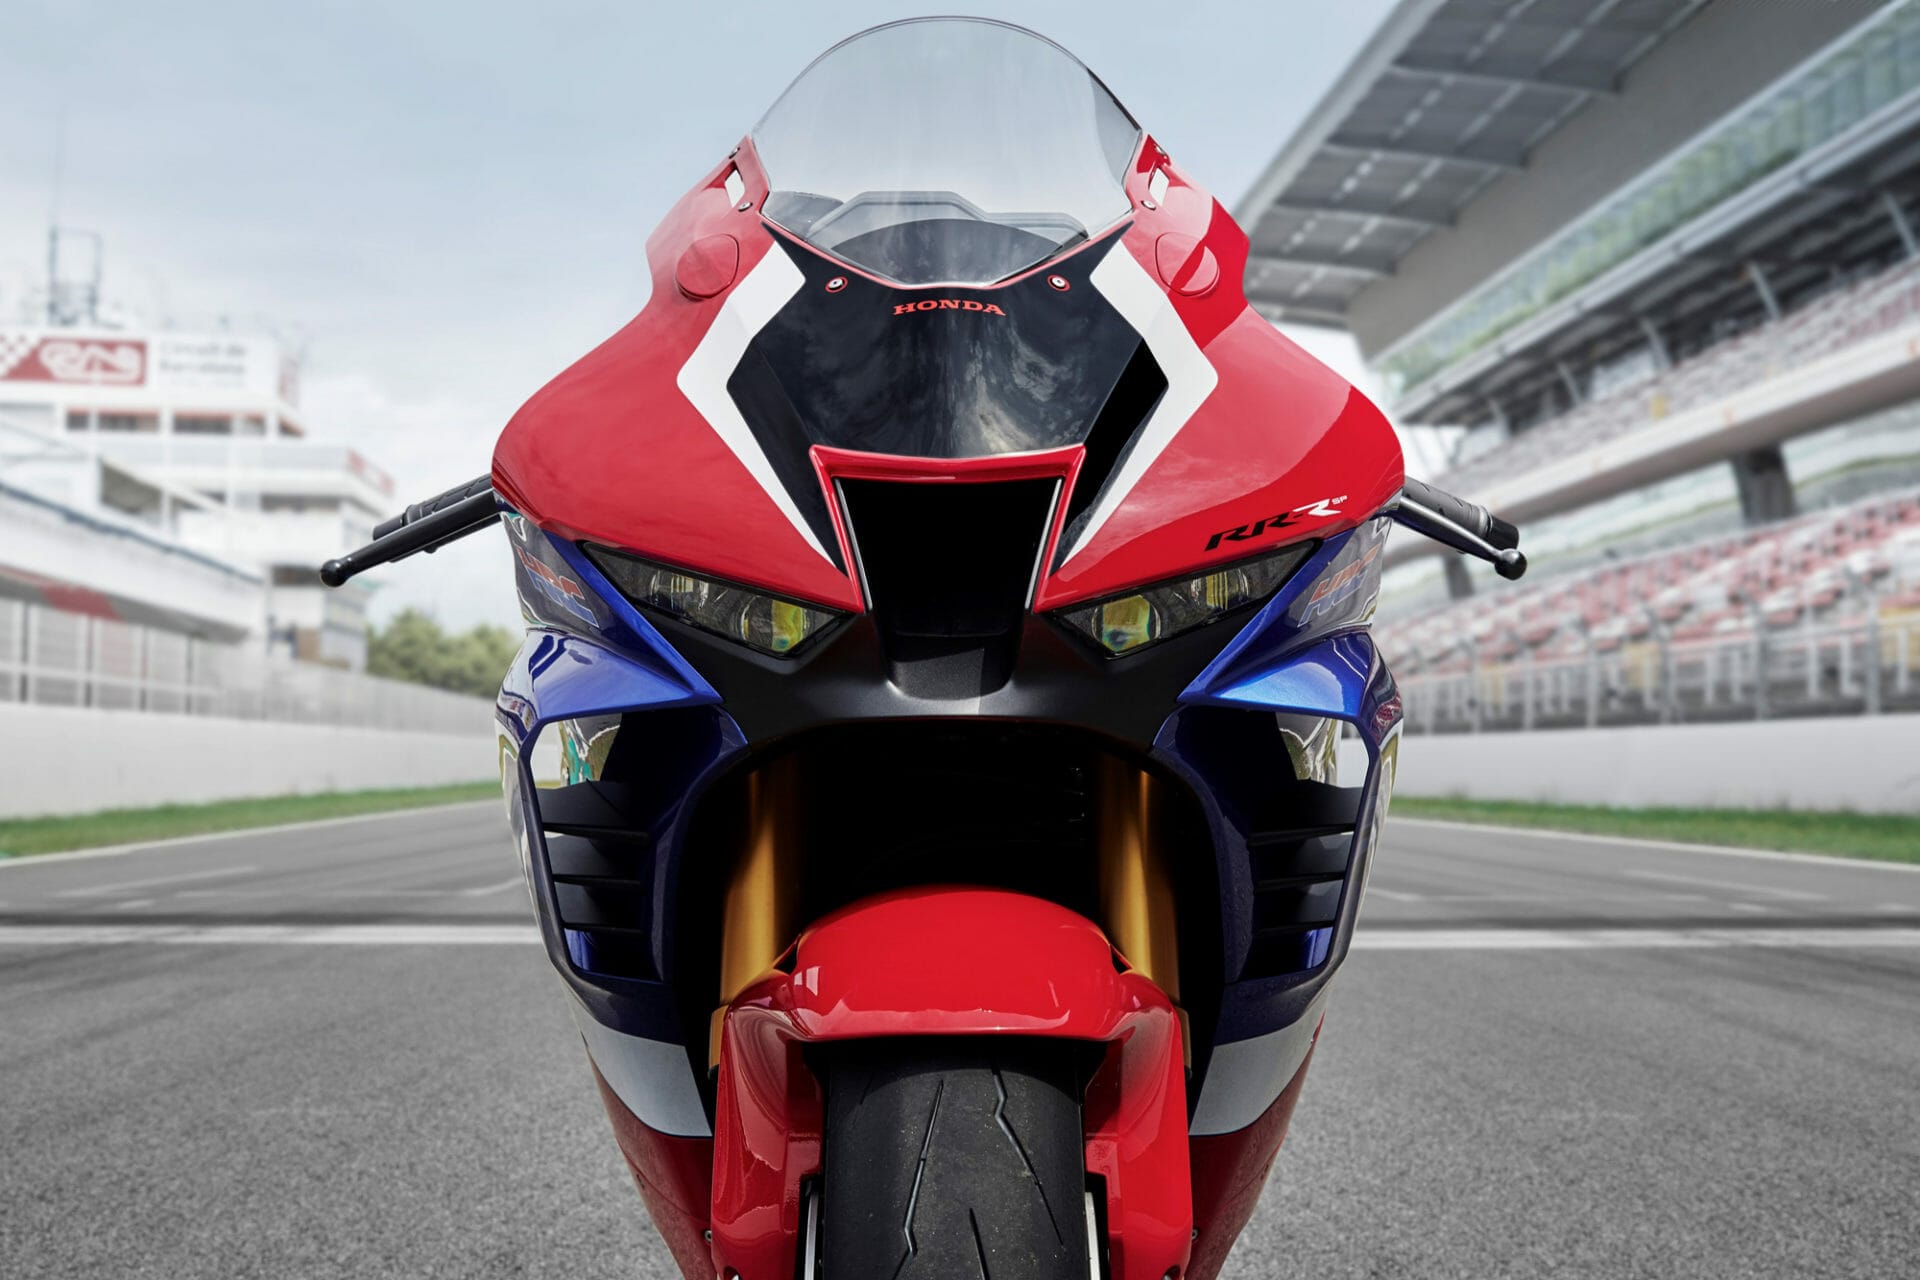 #Honda #CBR1000RRR #Fireblade presented
- also in the app Motorcycle News